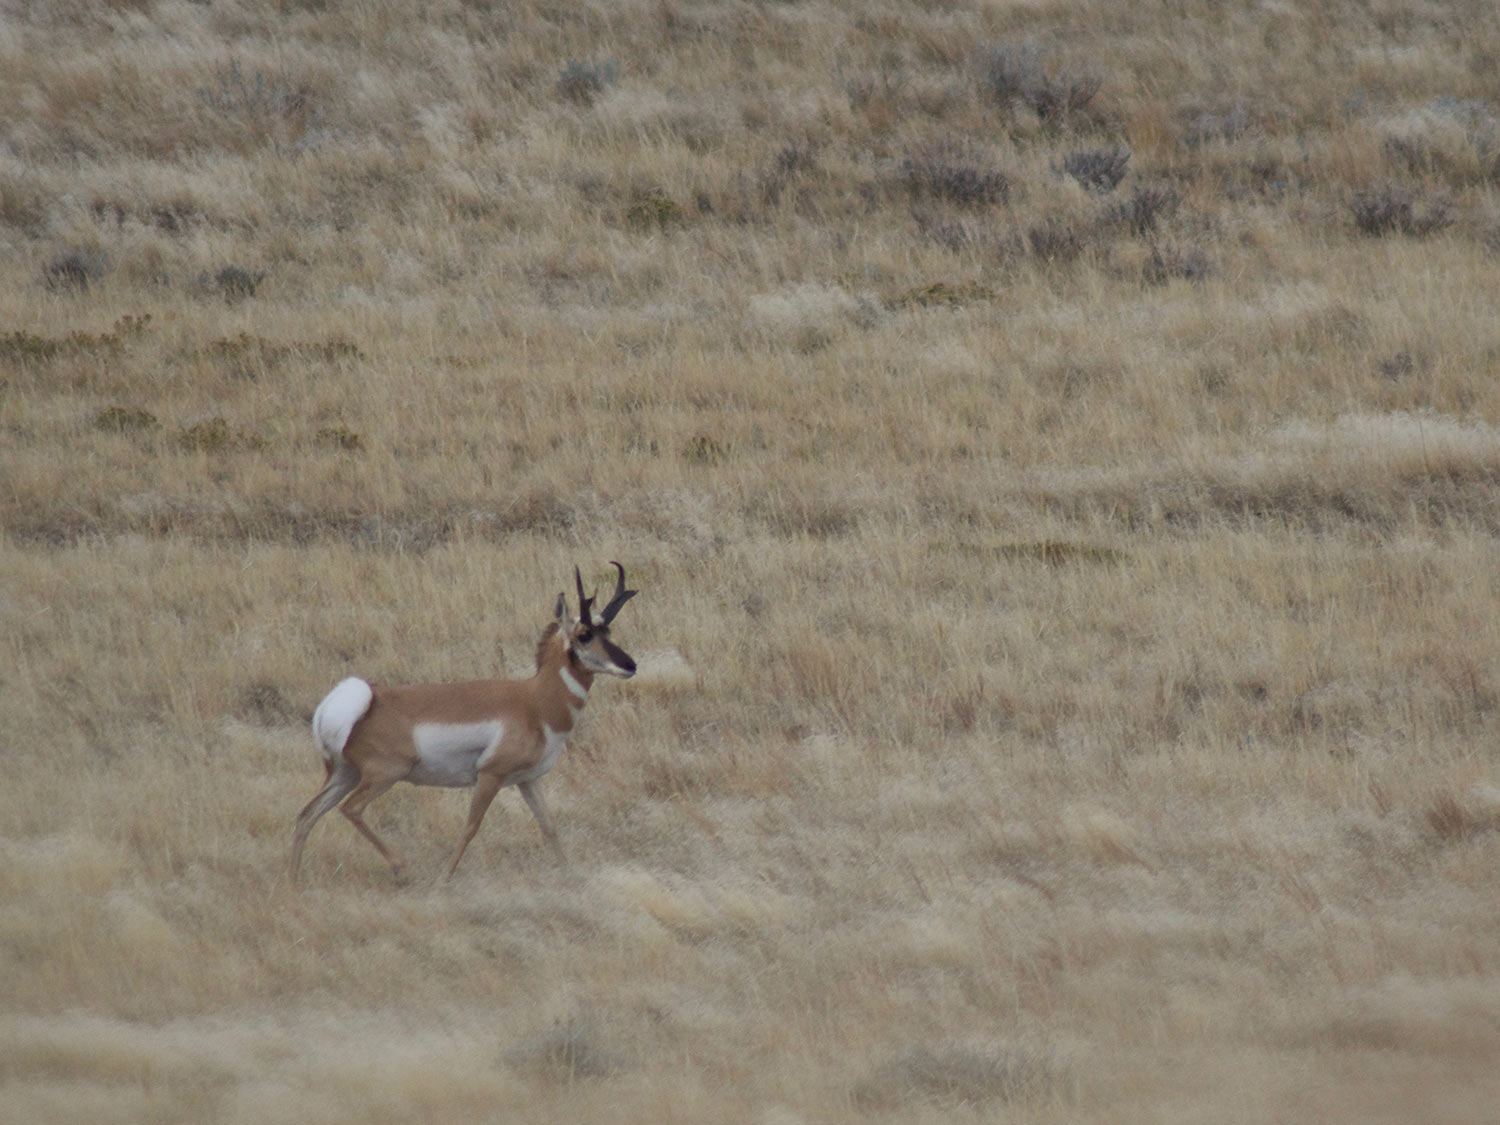 A single pronghorn antelope walks alone in an open field.